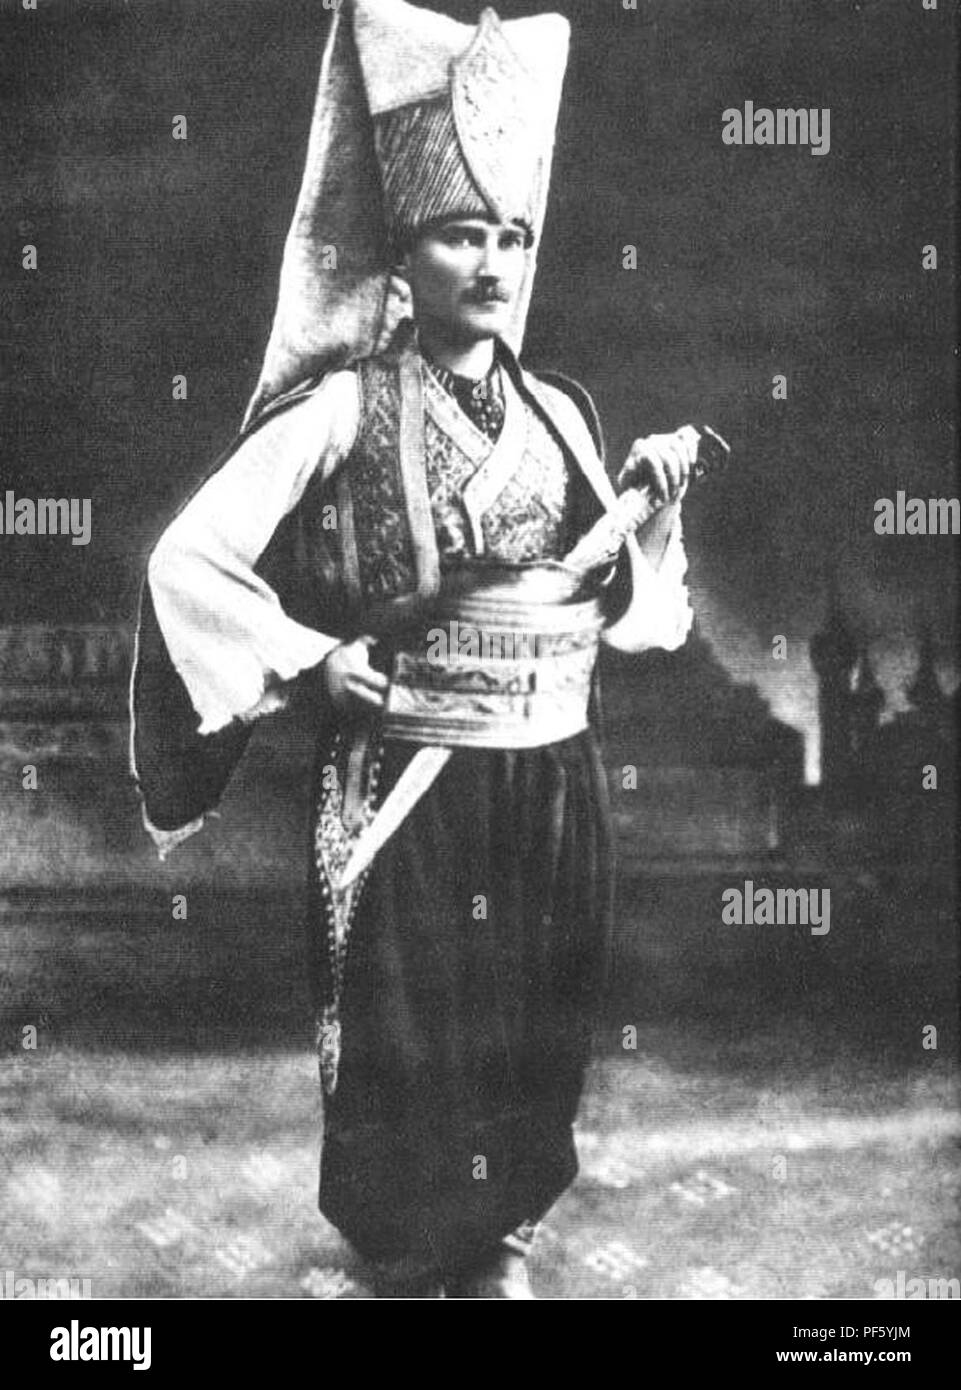 Ataturk Janissary. Stock Photo